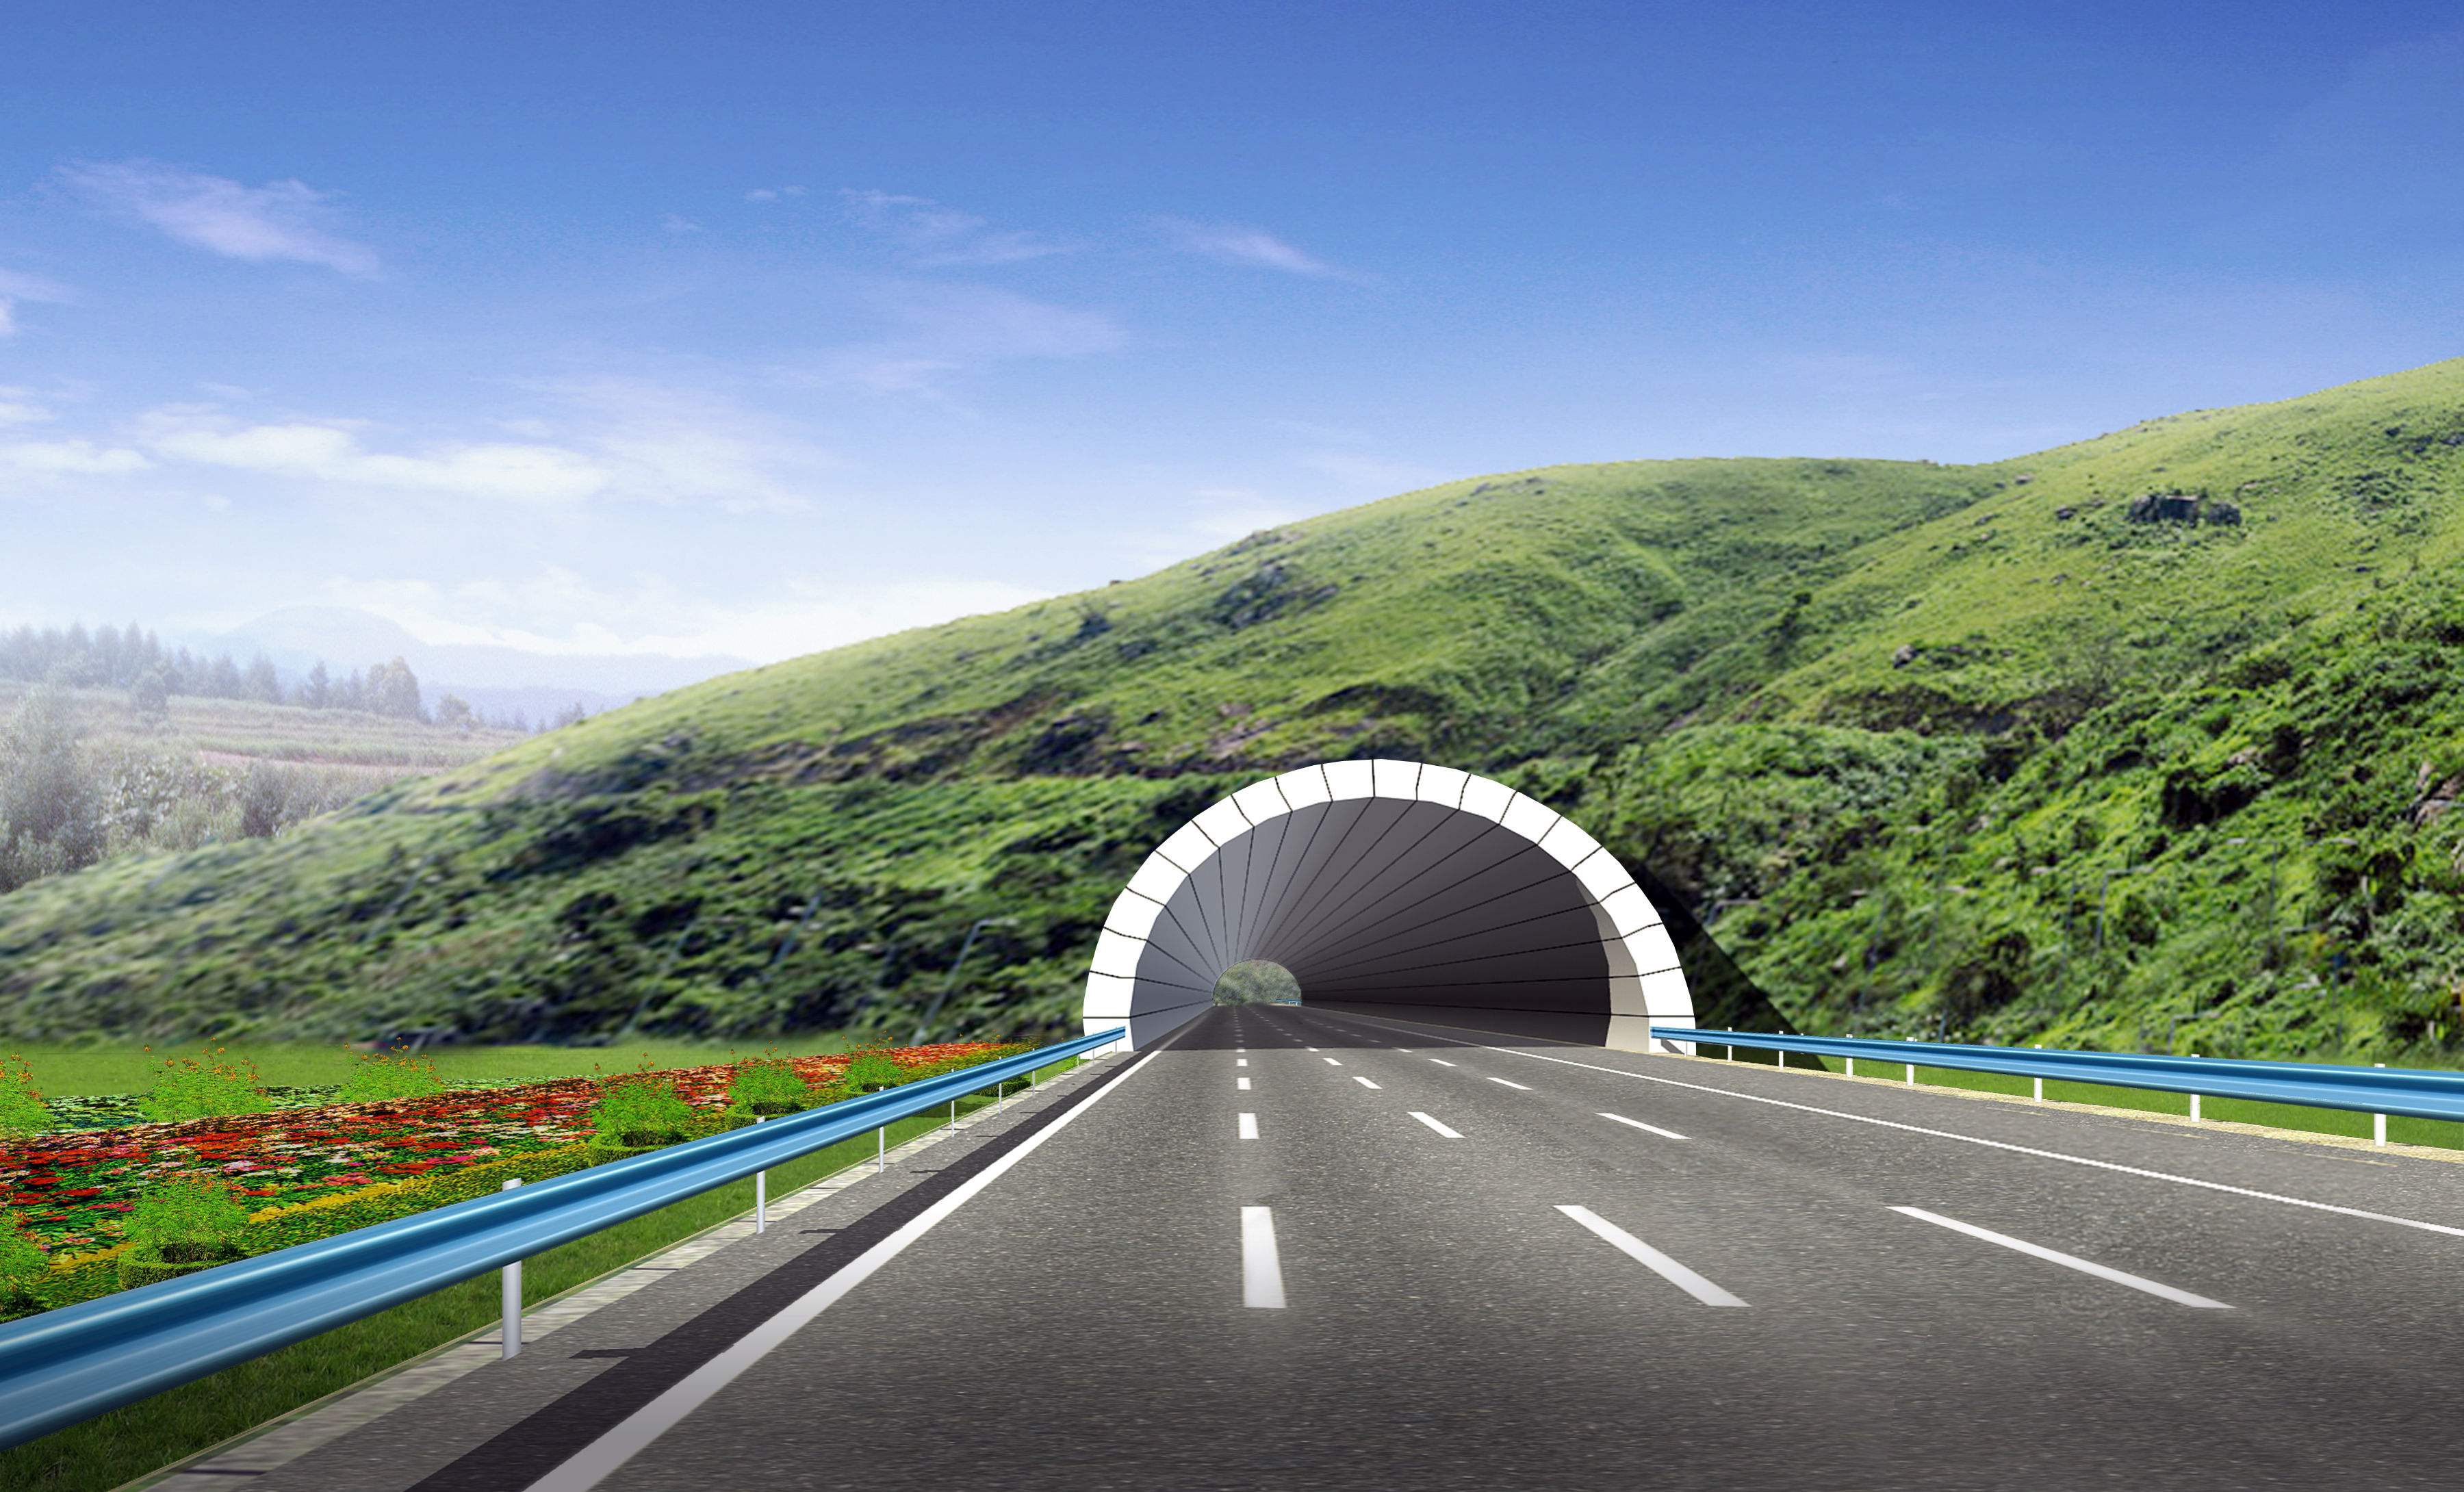 重庆在建的一条高速公路,全长746km,双向6车道与双向4车道交替